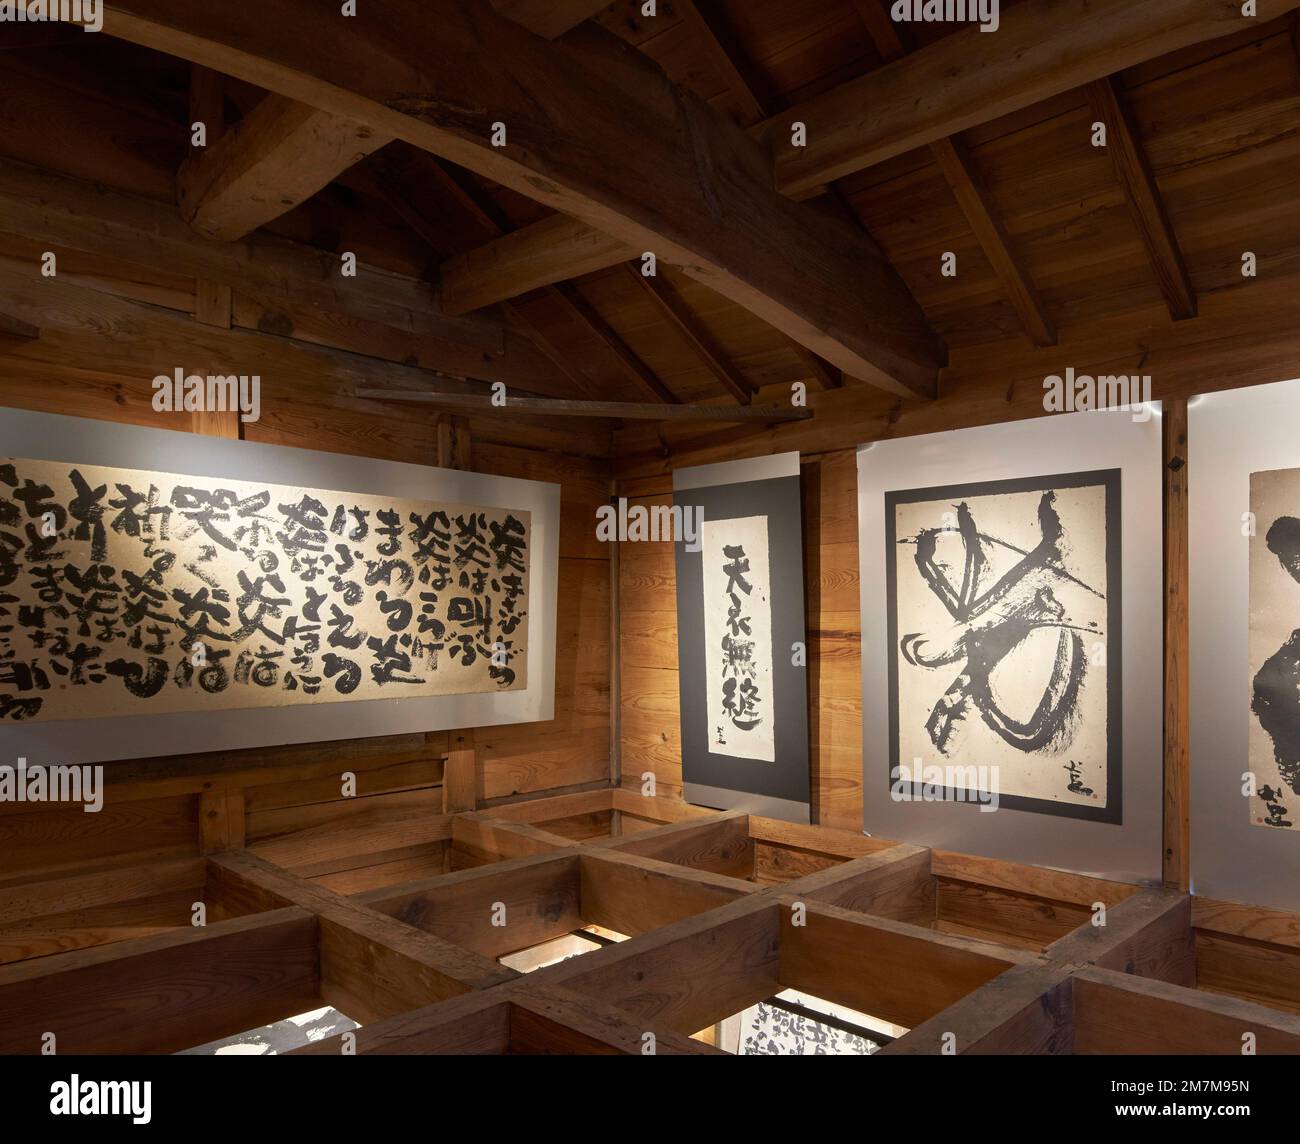 Galerieeinrichtung im oberen Stockwerk. Kura-Galerie für Tokiko Kato, Kamogawa, Japan. Architekt: Atelier Bow Wow, 2022. Stockfoto